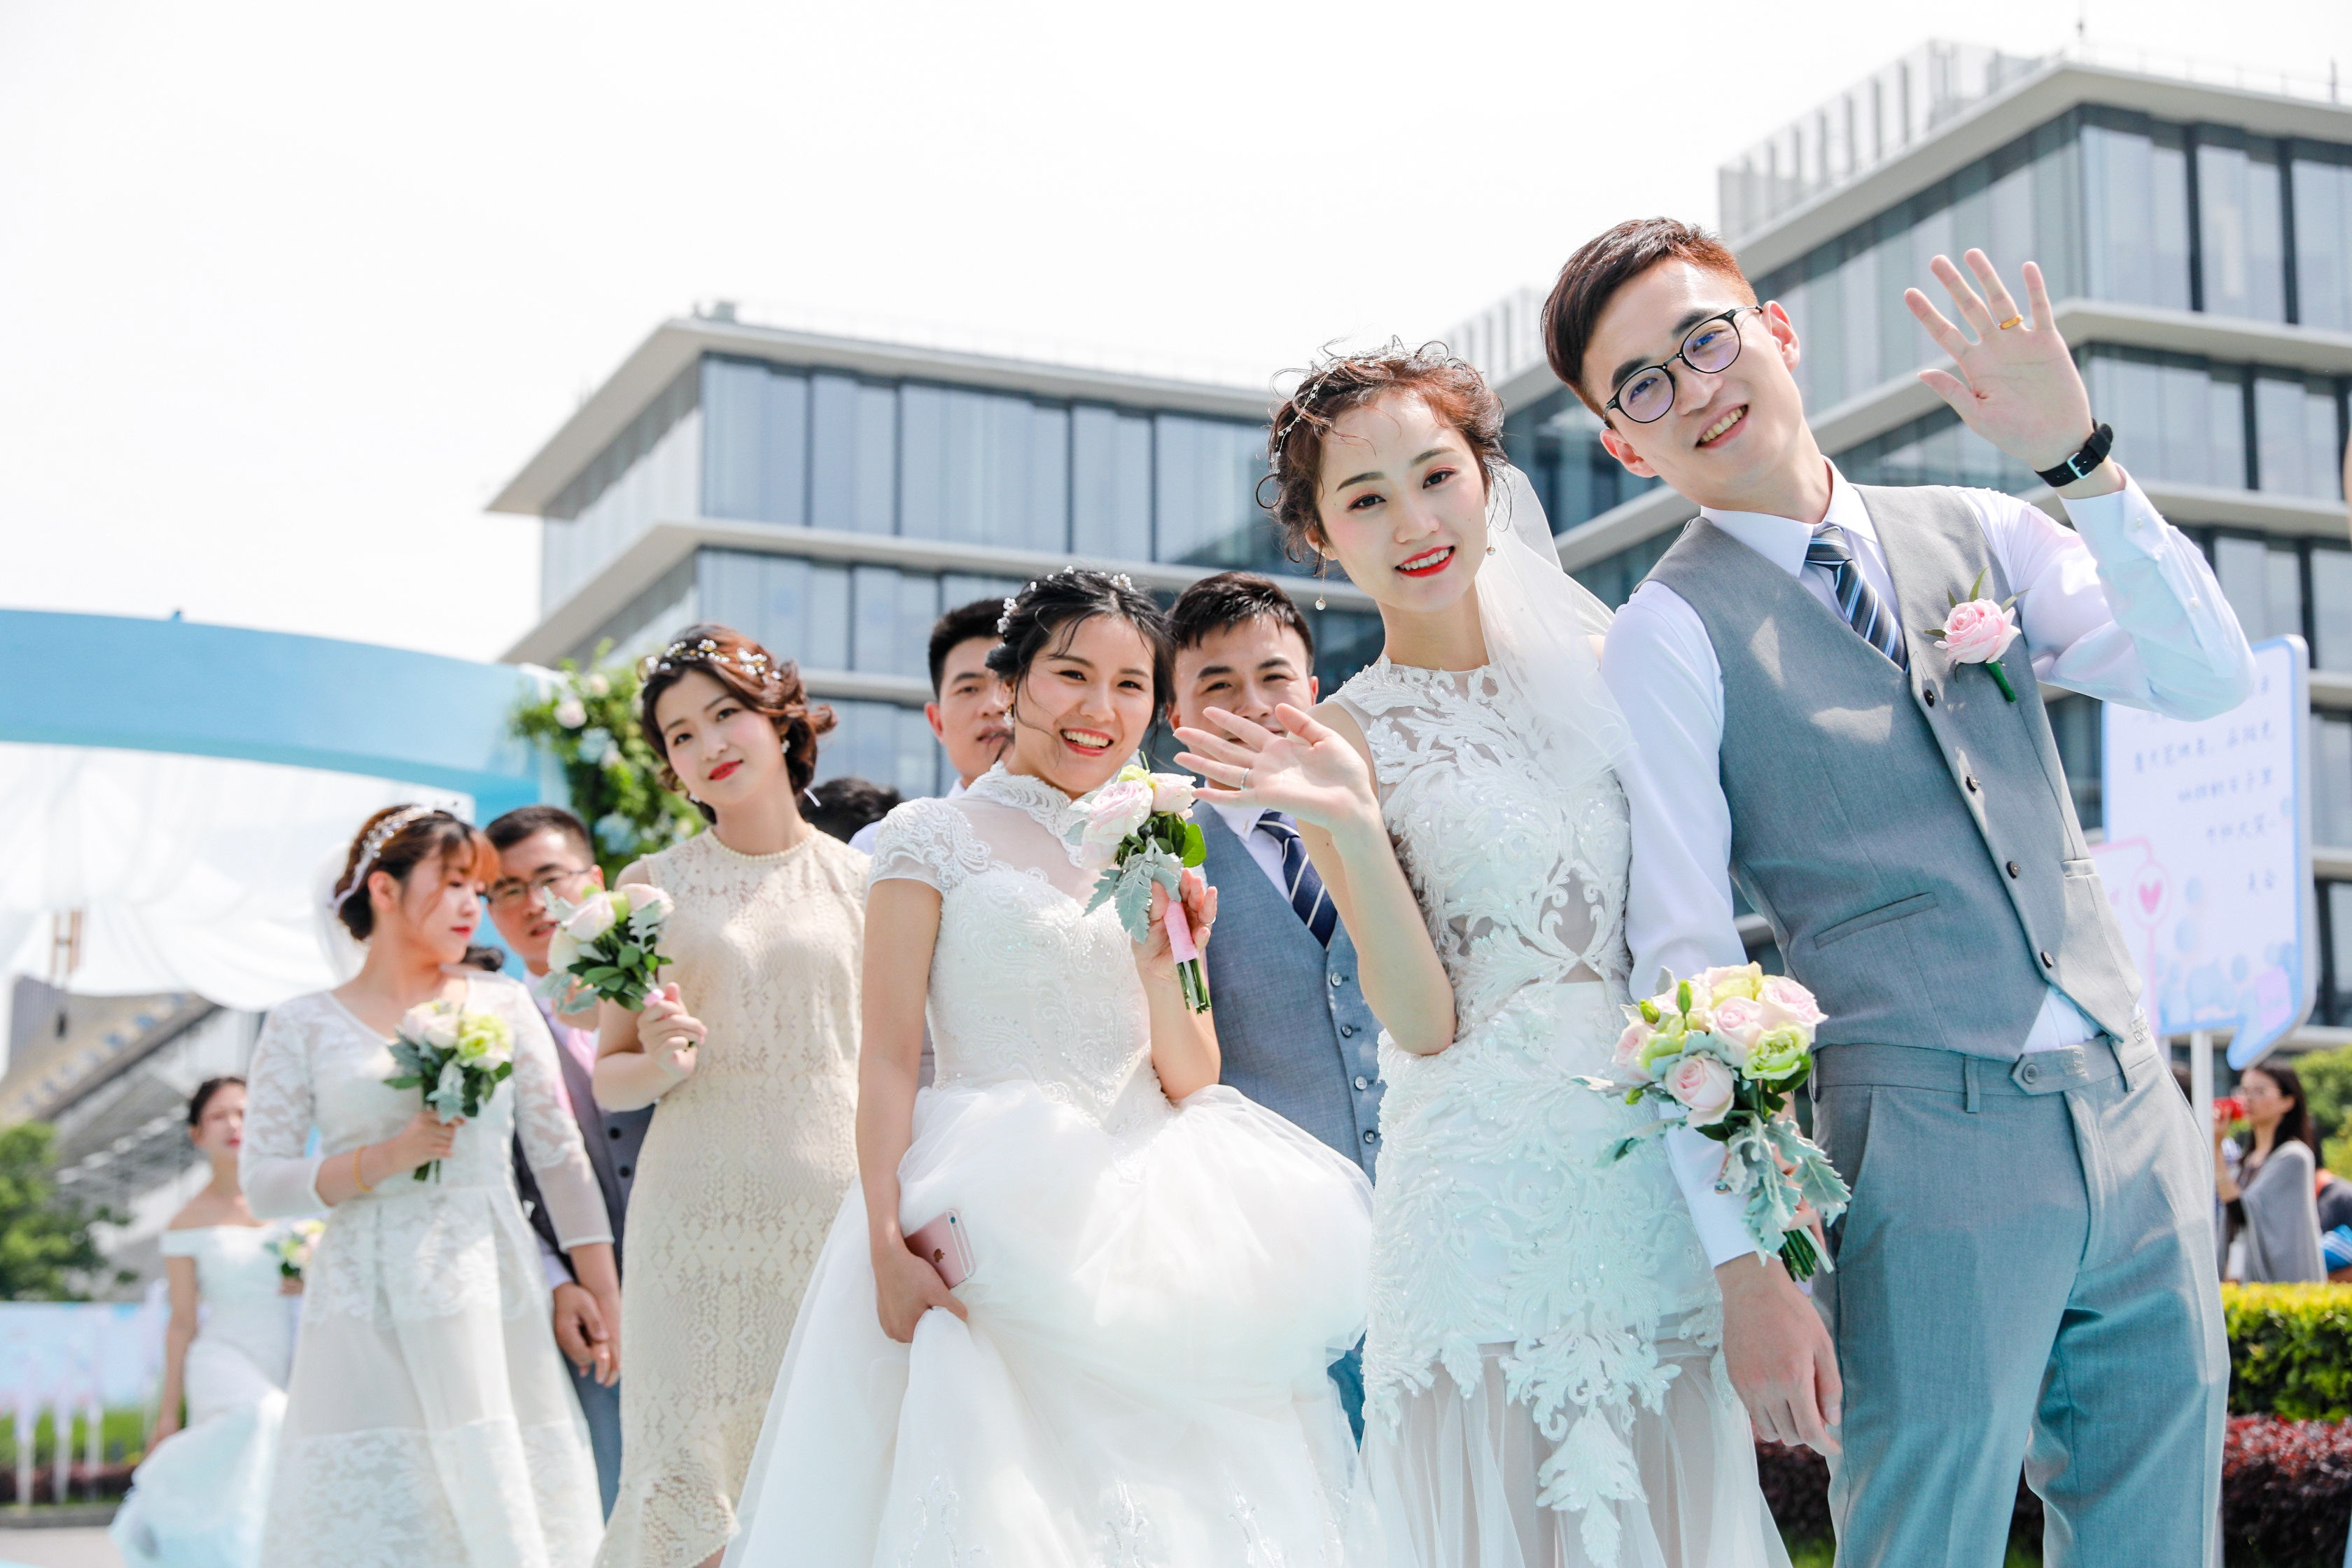 【新娘日记】打造一场美美哒户外婚礼~-结婚大本营-杭州19楼